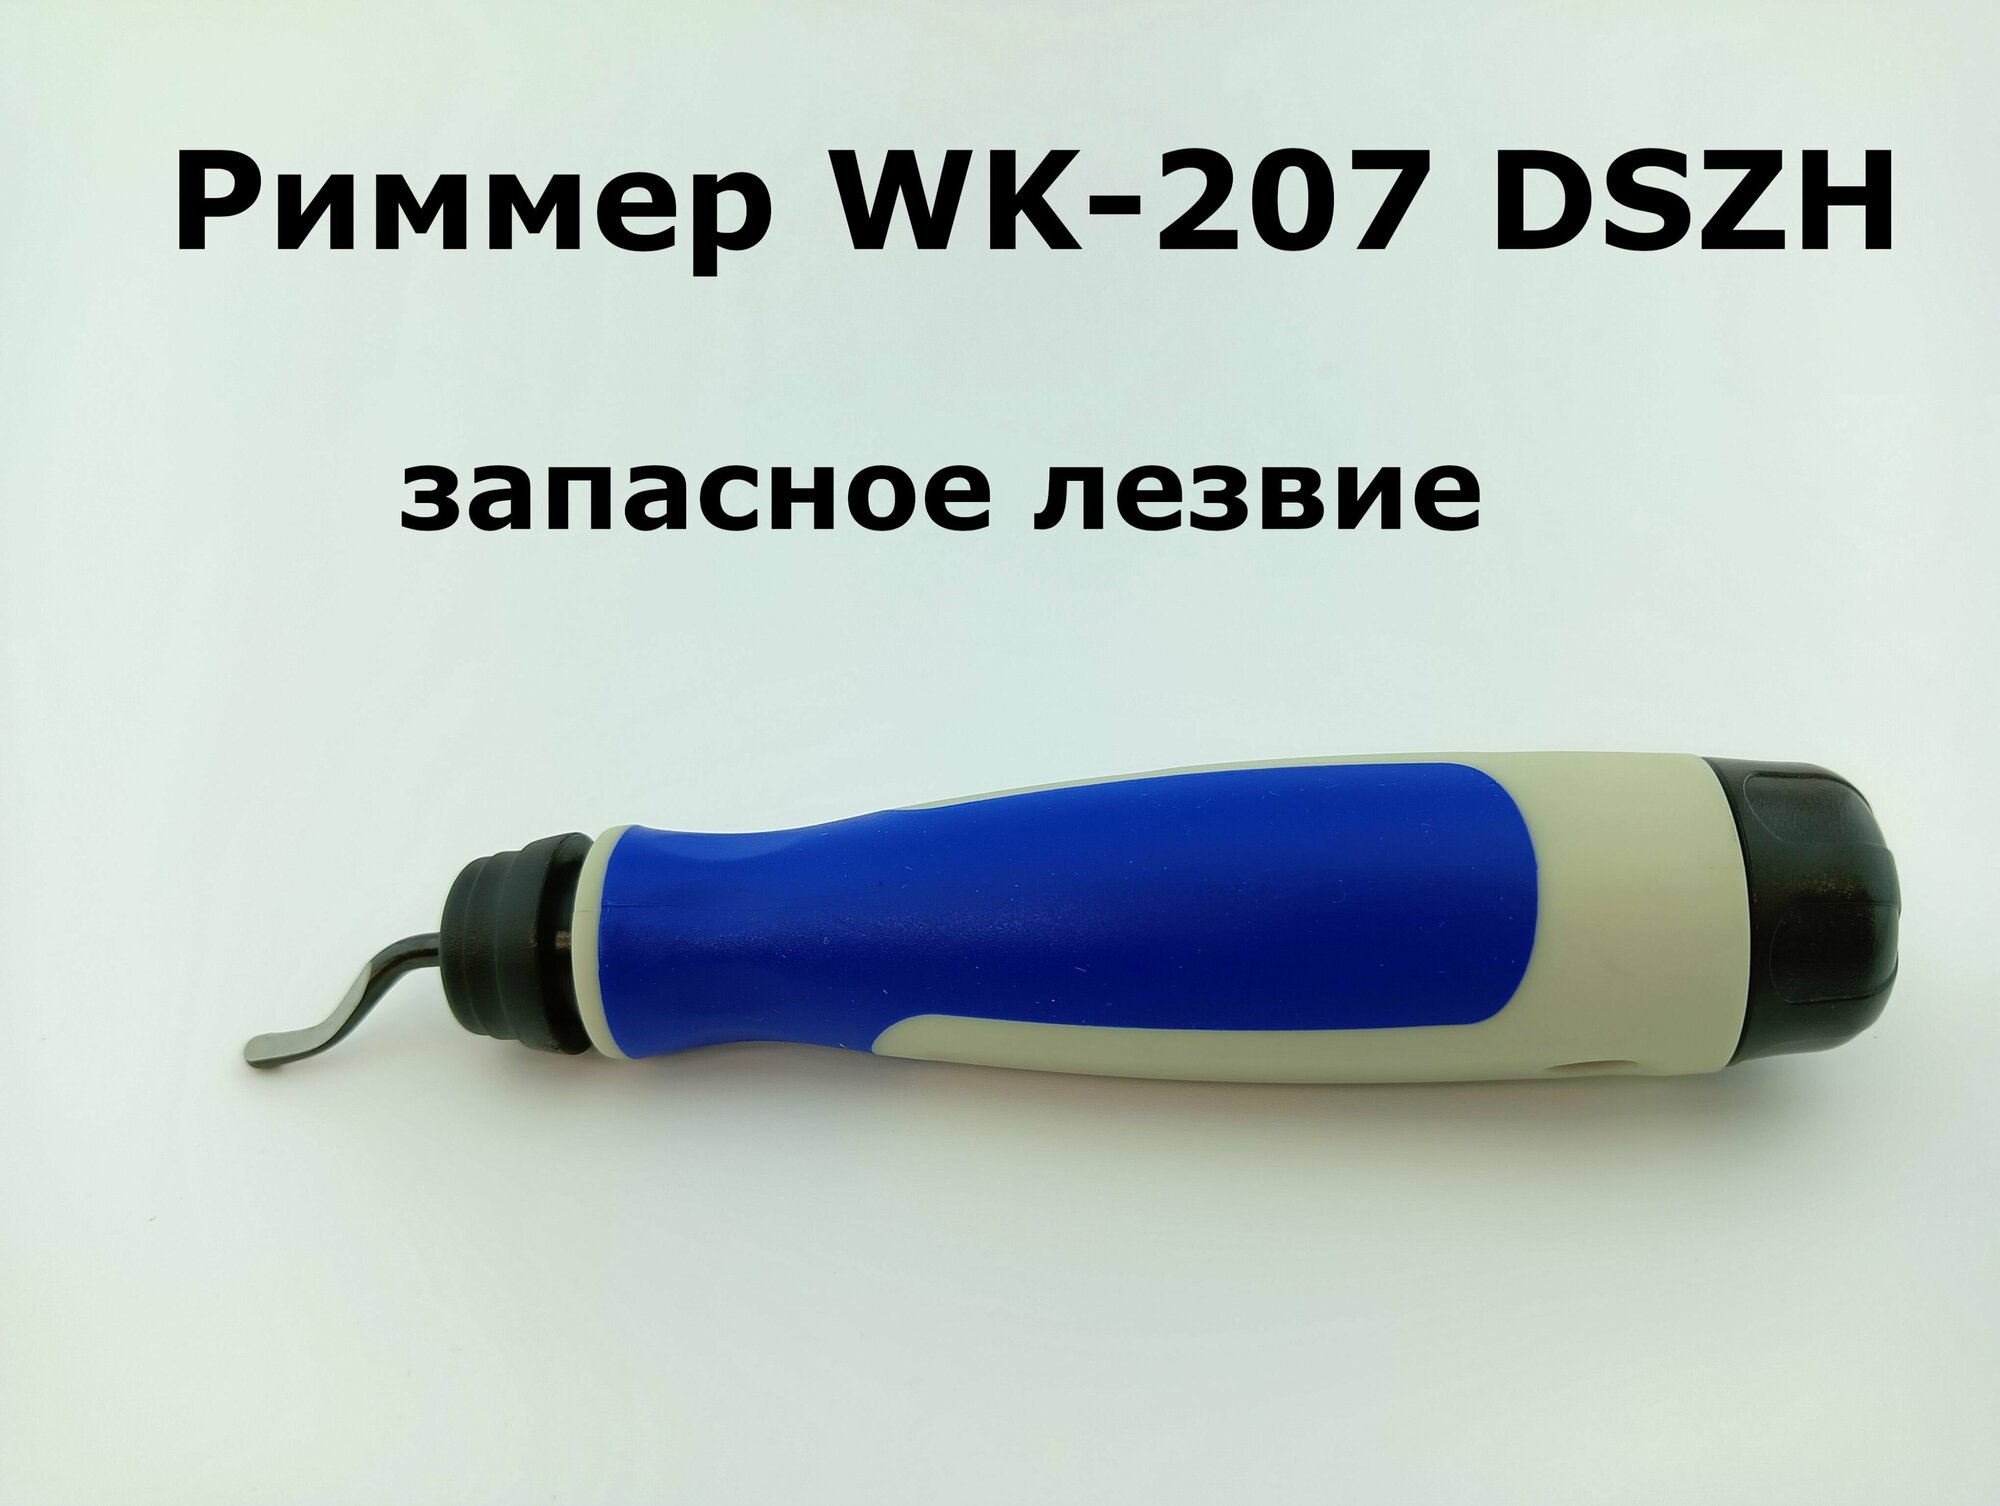 Риммер-карандаш WK-207 DSZH запасное лезвие